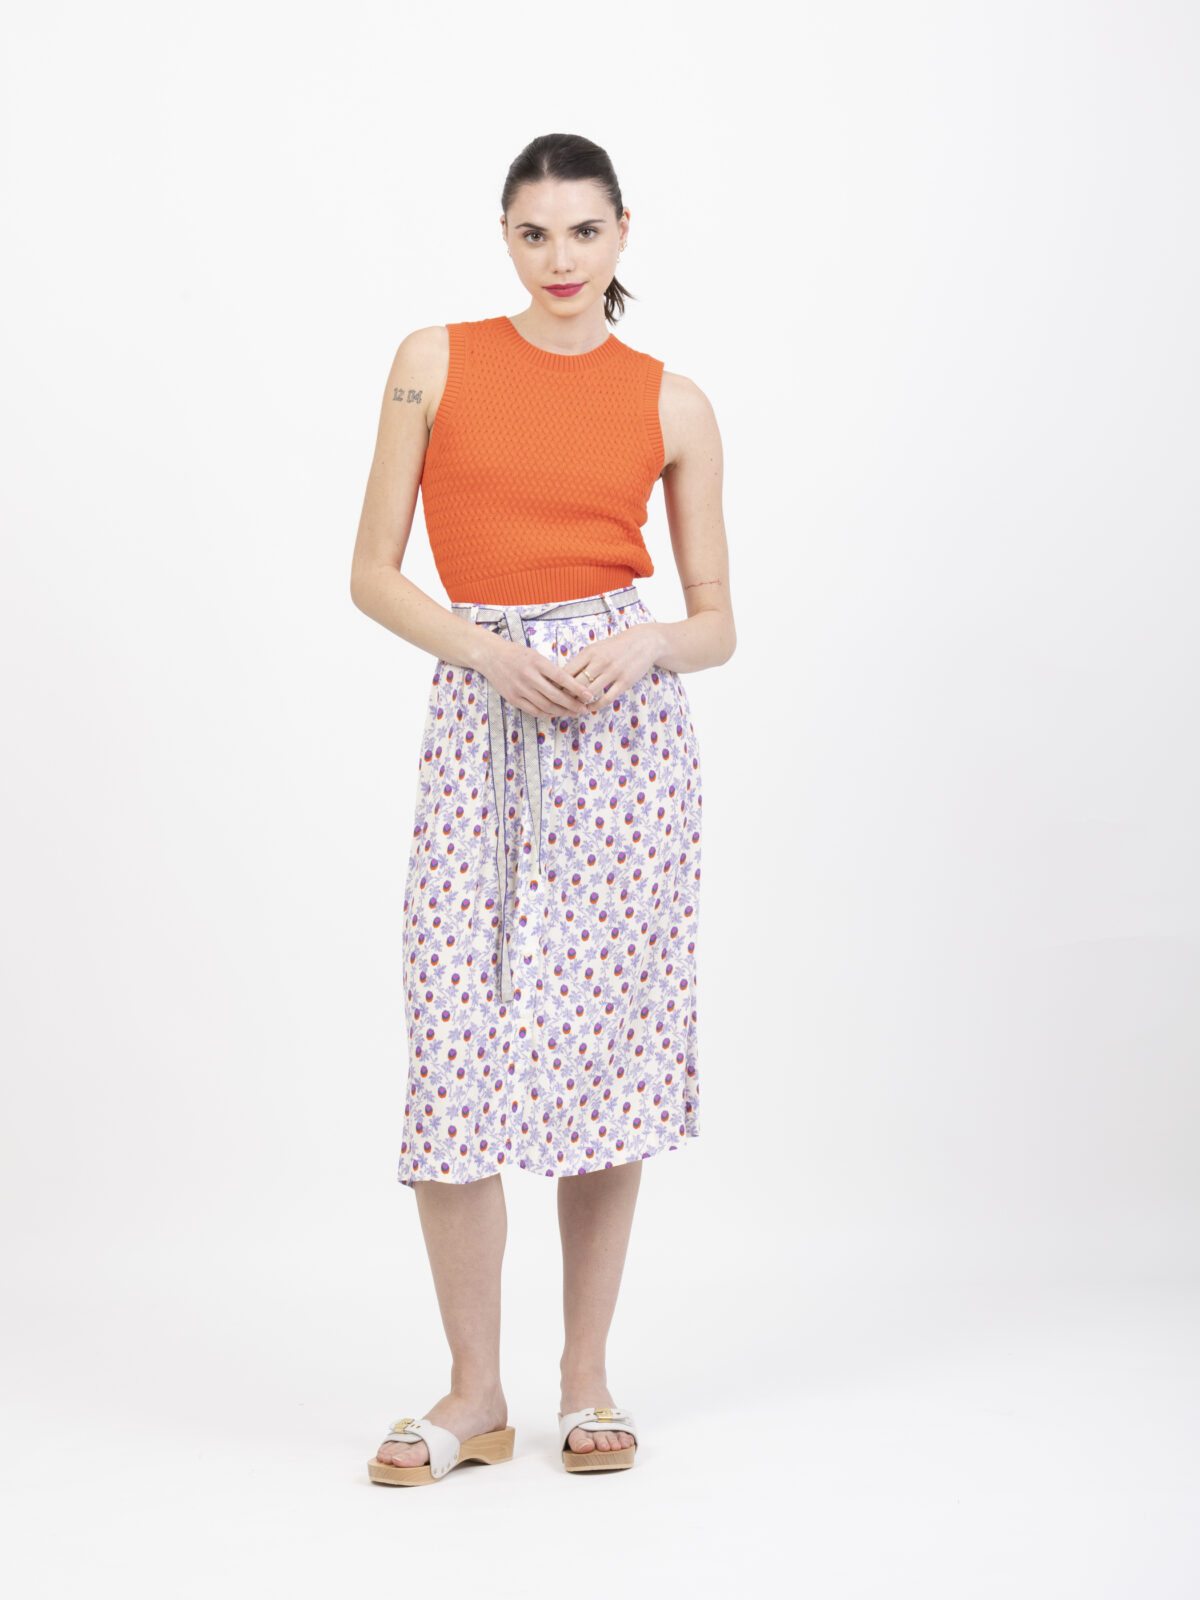 joyeuse-petite-francaise-matchbox-athens-shop-online-boutique-midi-skirt